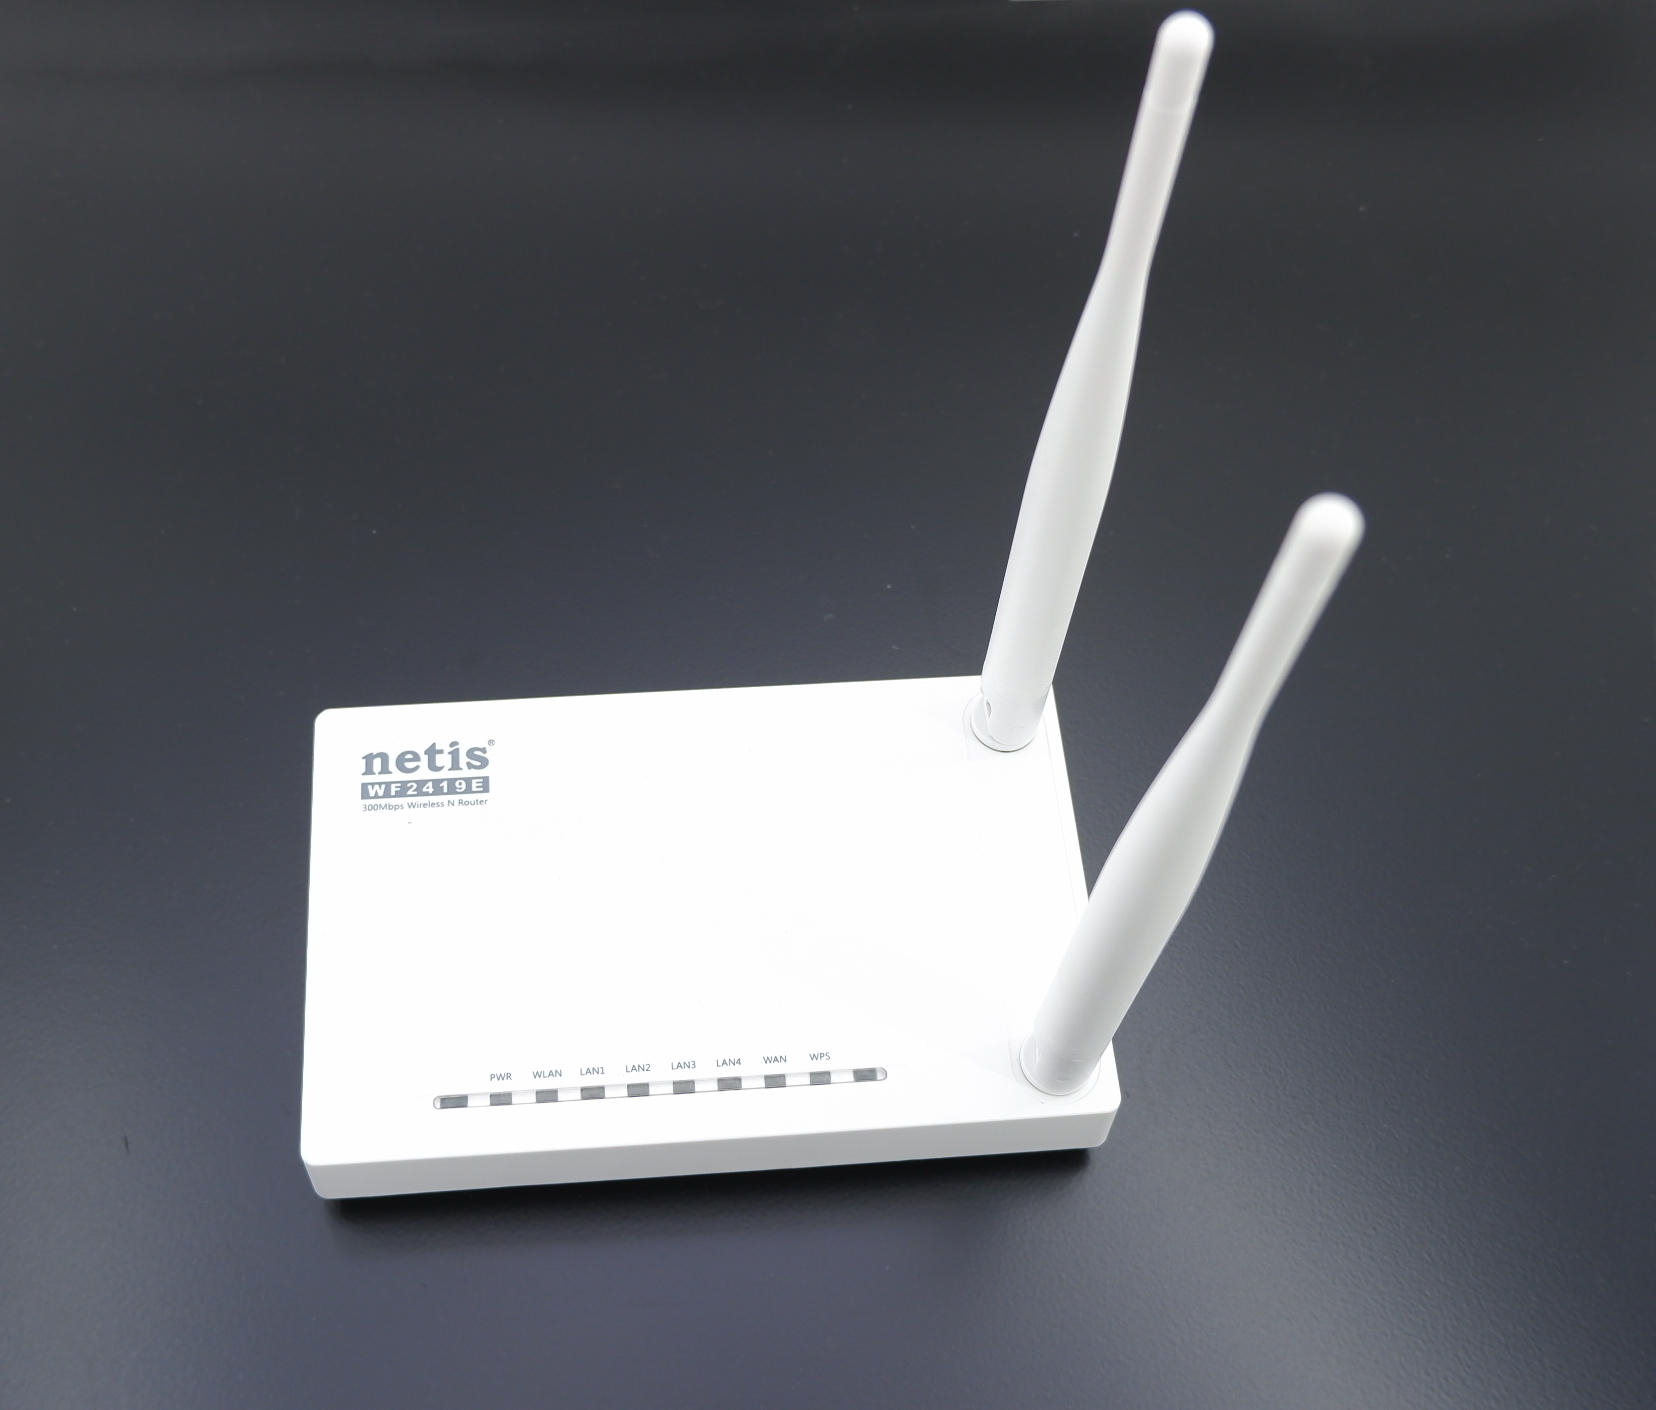 Купить роутер netis. Wi-Fi роутер Netis wf2419e. Роутер Netis WF-2419e. Wi-Fi роутер Netis wf2419e, n300. Wi-Fi маршрутизатор 300mbps 10/100m 4p wf2419e Netis.